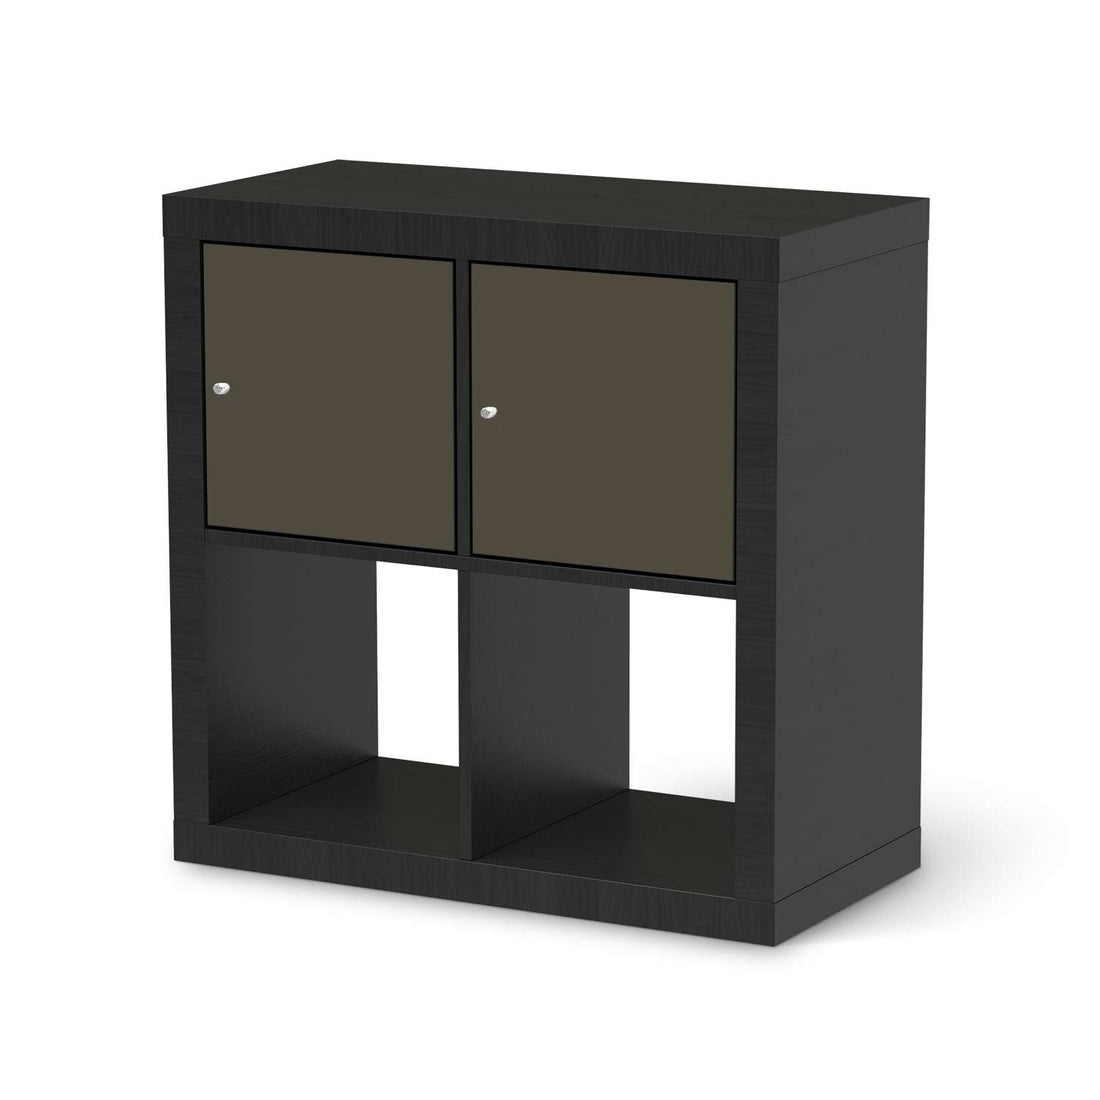 Möbelfolie Braungrau Dark - IKEA Kallax Regal 2 Türen Quer - schwarz